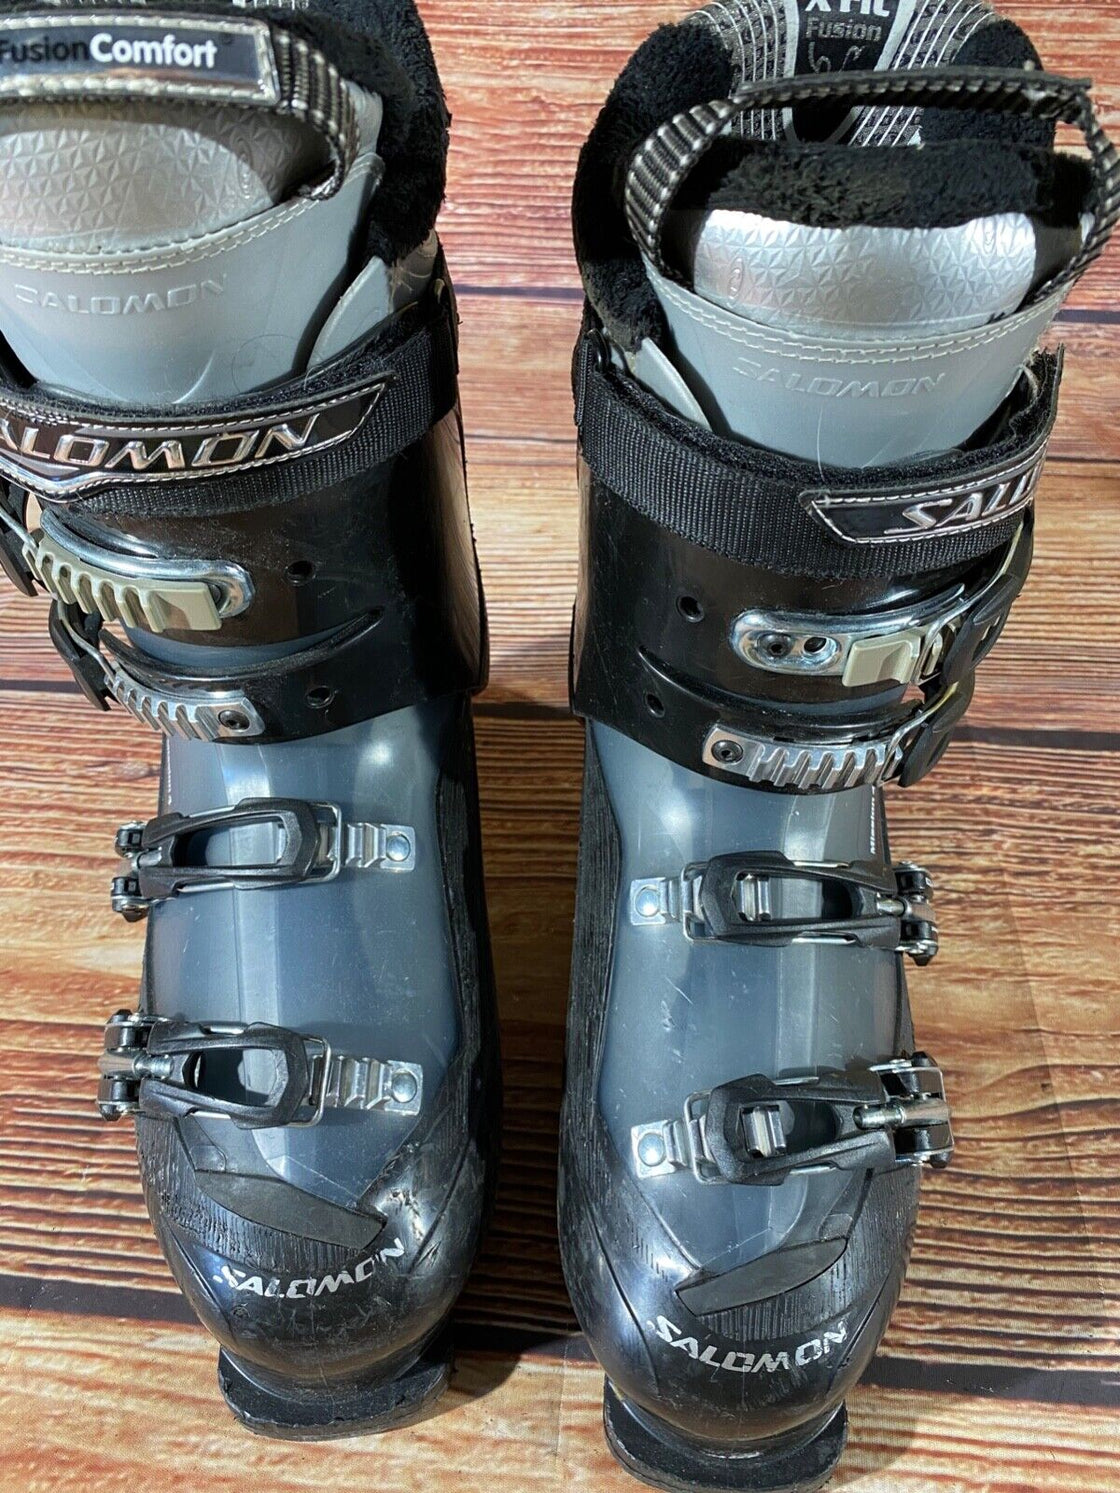 SALOMON Alpine Ski Boots Downhill Size Mondo 278 mm, Outer Sole 328 mm DH143